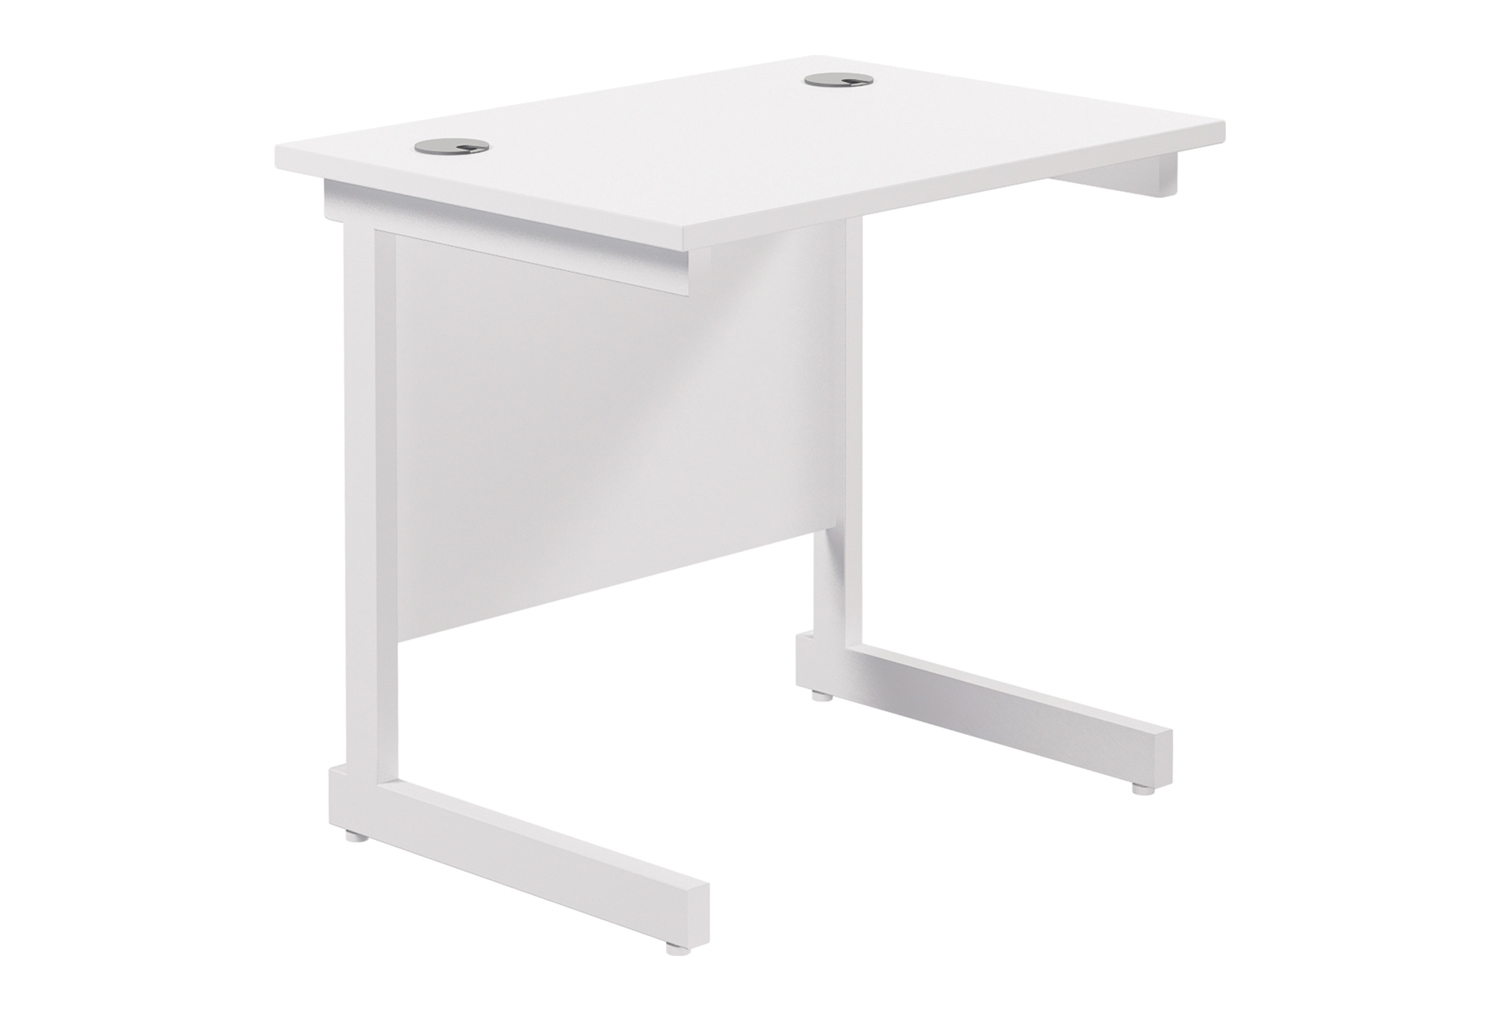 Progress I Narrow Rectangular Office Desk, 80wx60dx73h (cm), White Frame, White